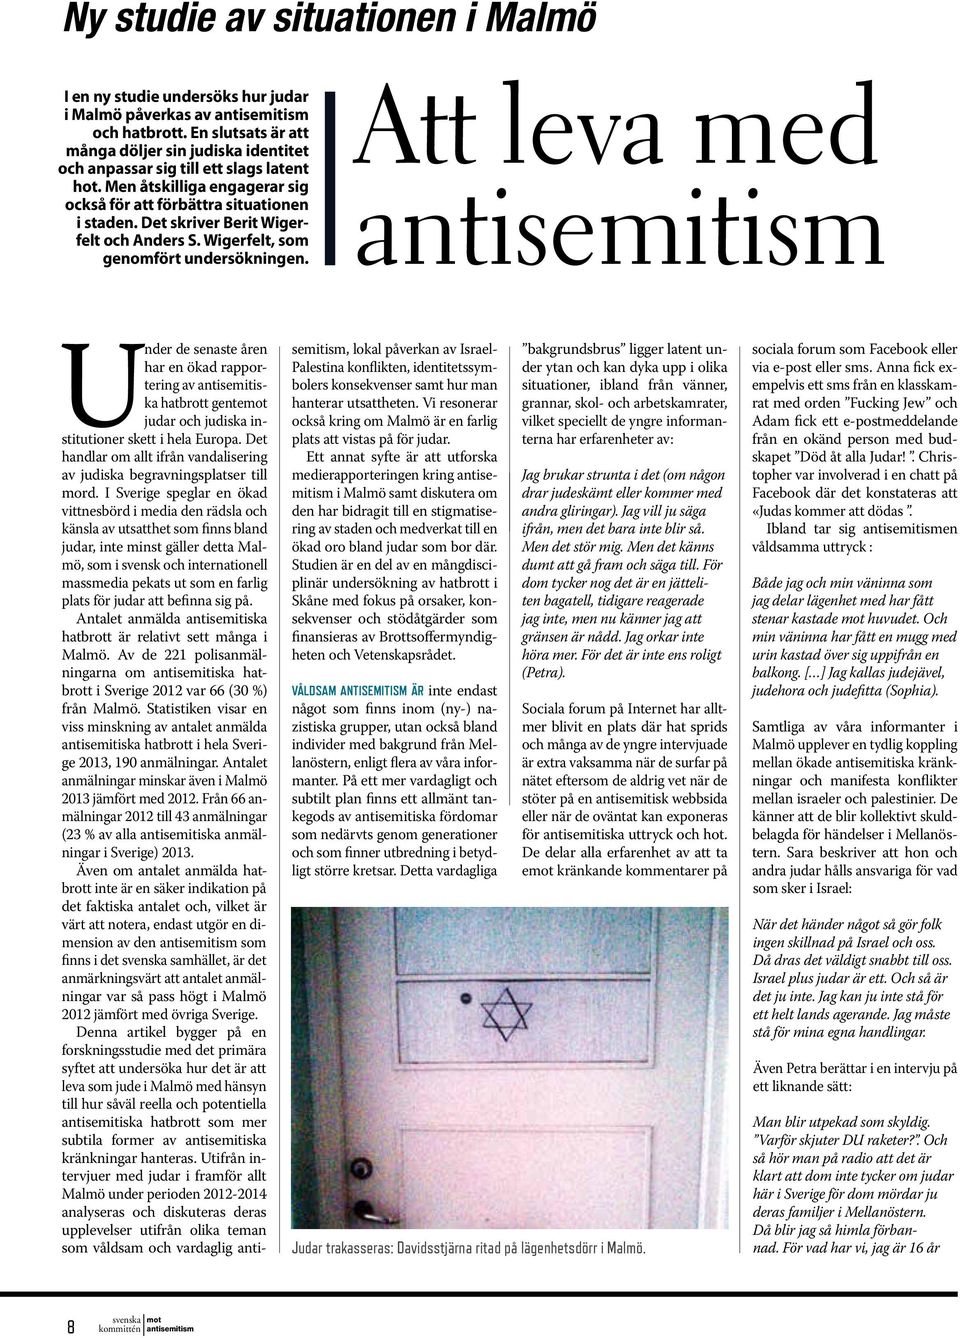 Att leva med Under de senaste åren har en ökad rapportering av antisemitiska hatbrott gentemot judar och judiska institutioner skett i hela Europa.